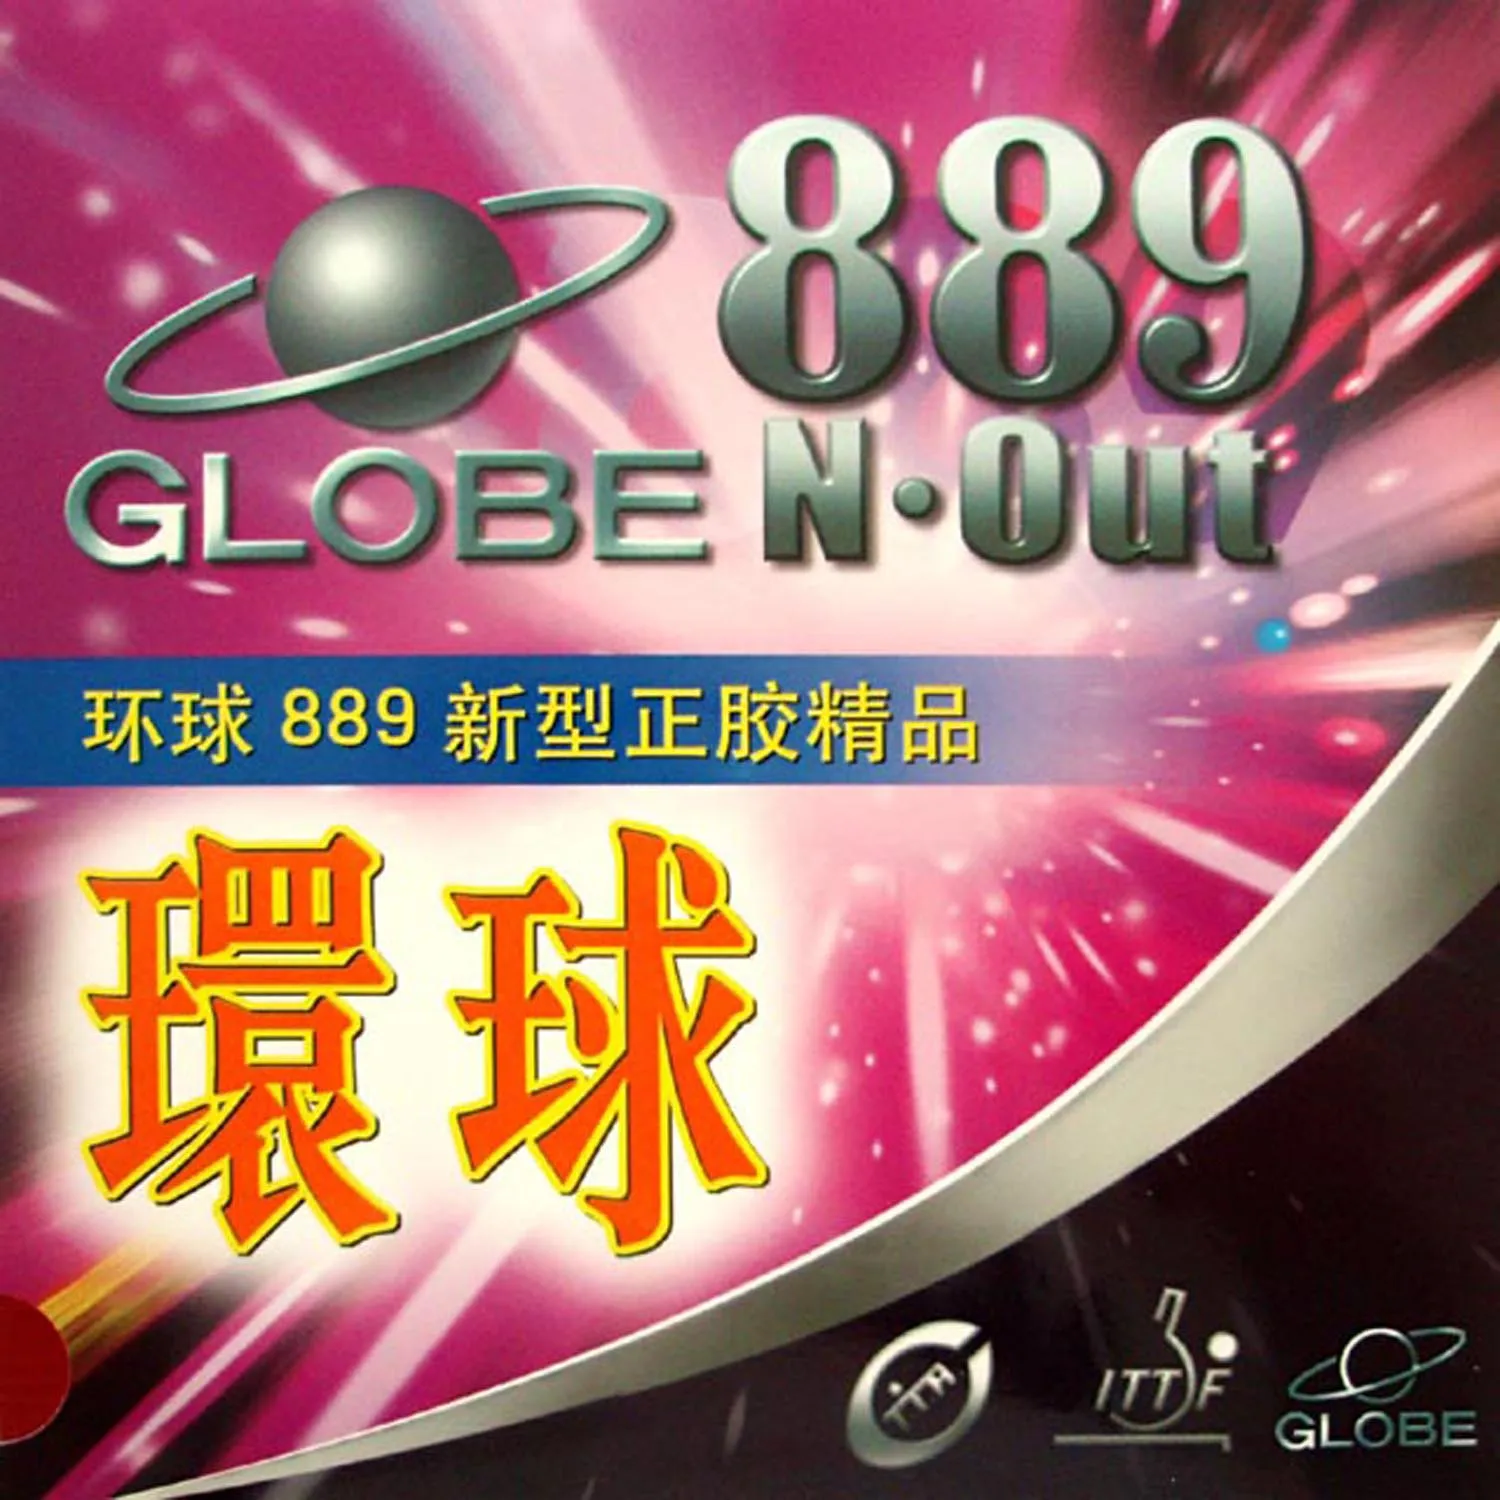 Globe 889 Быстрая атака, настольный теннис, пинг-понг с коротким выпадом, резина без губки, верхний слой OX best Control